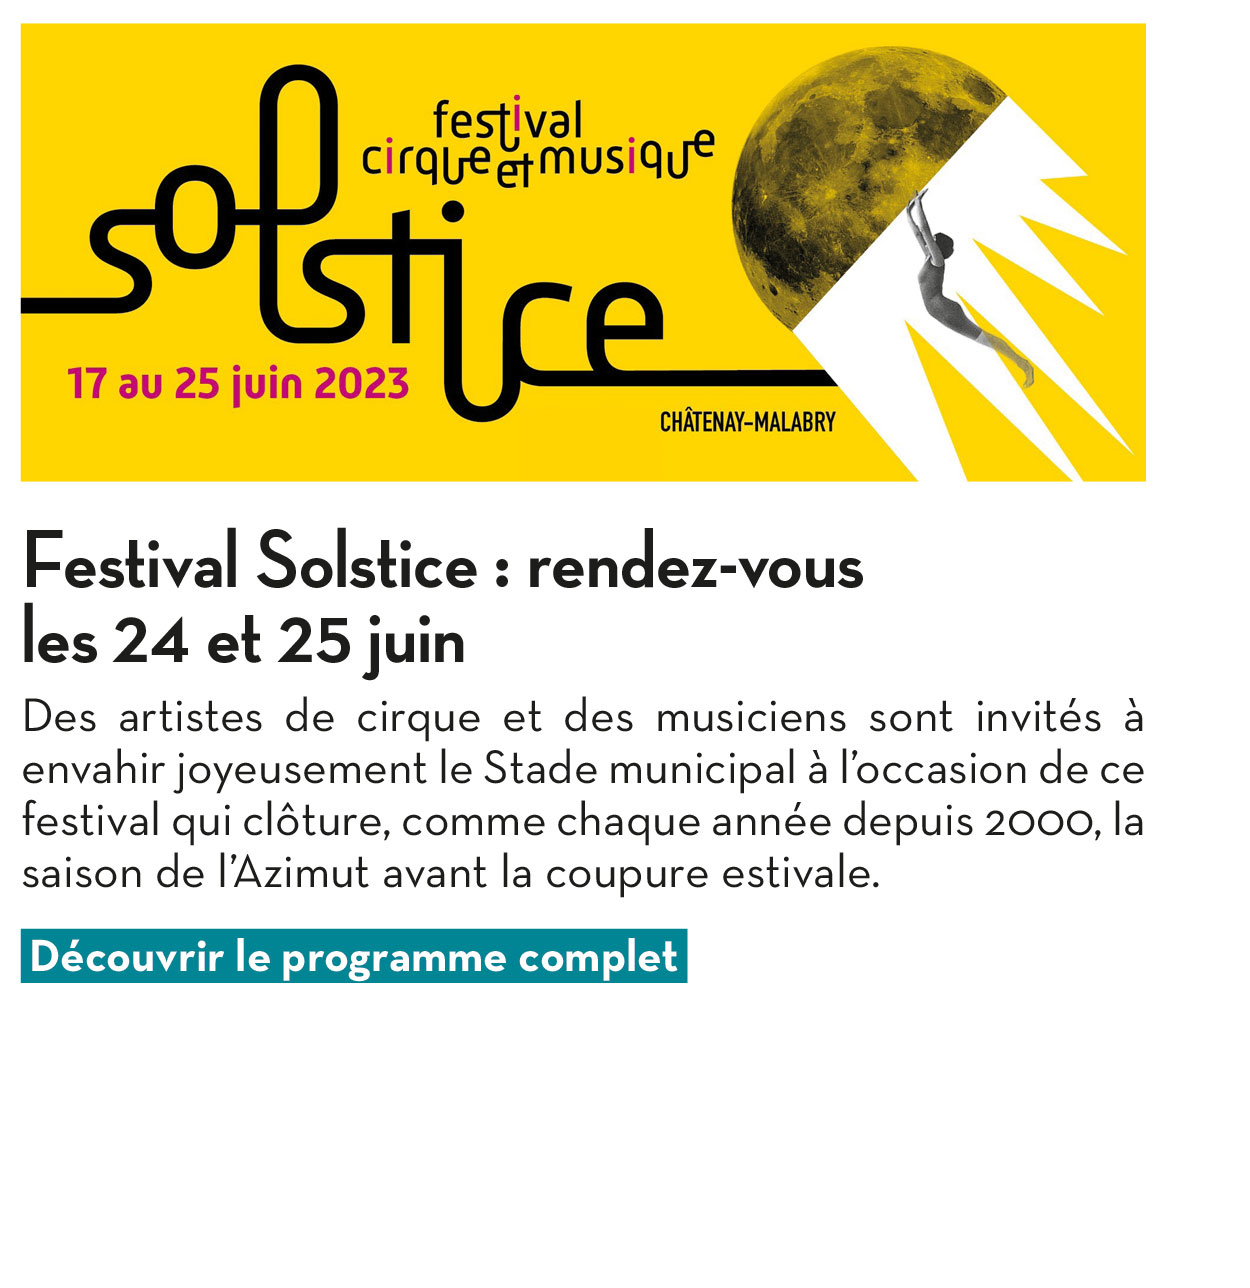 Festival Solstice : rendez-vous les 24 et 25 juin